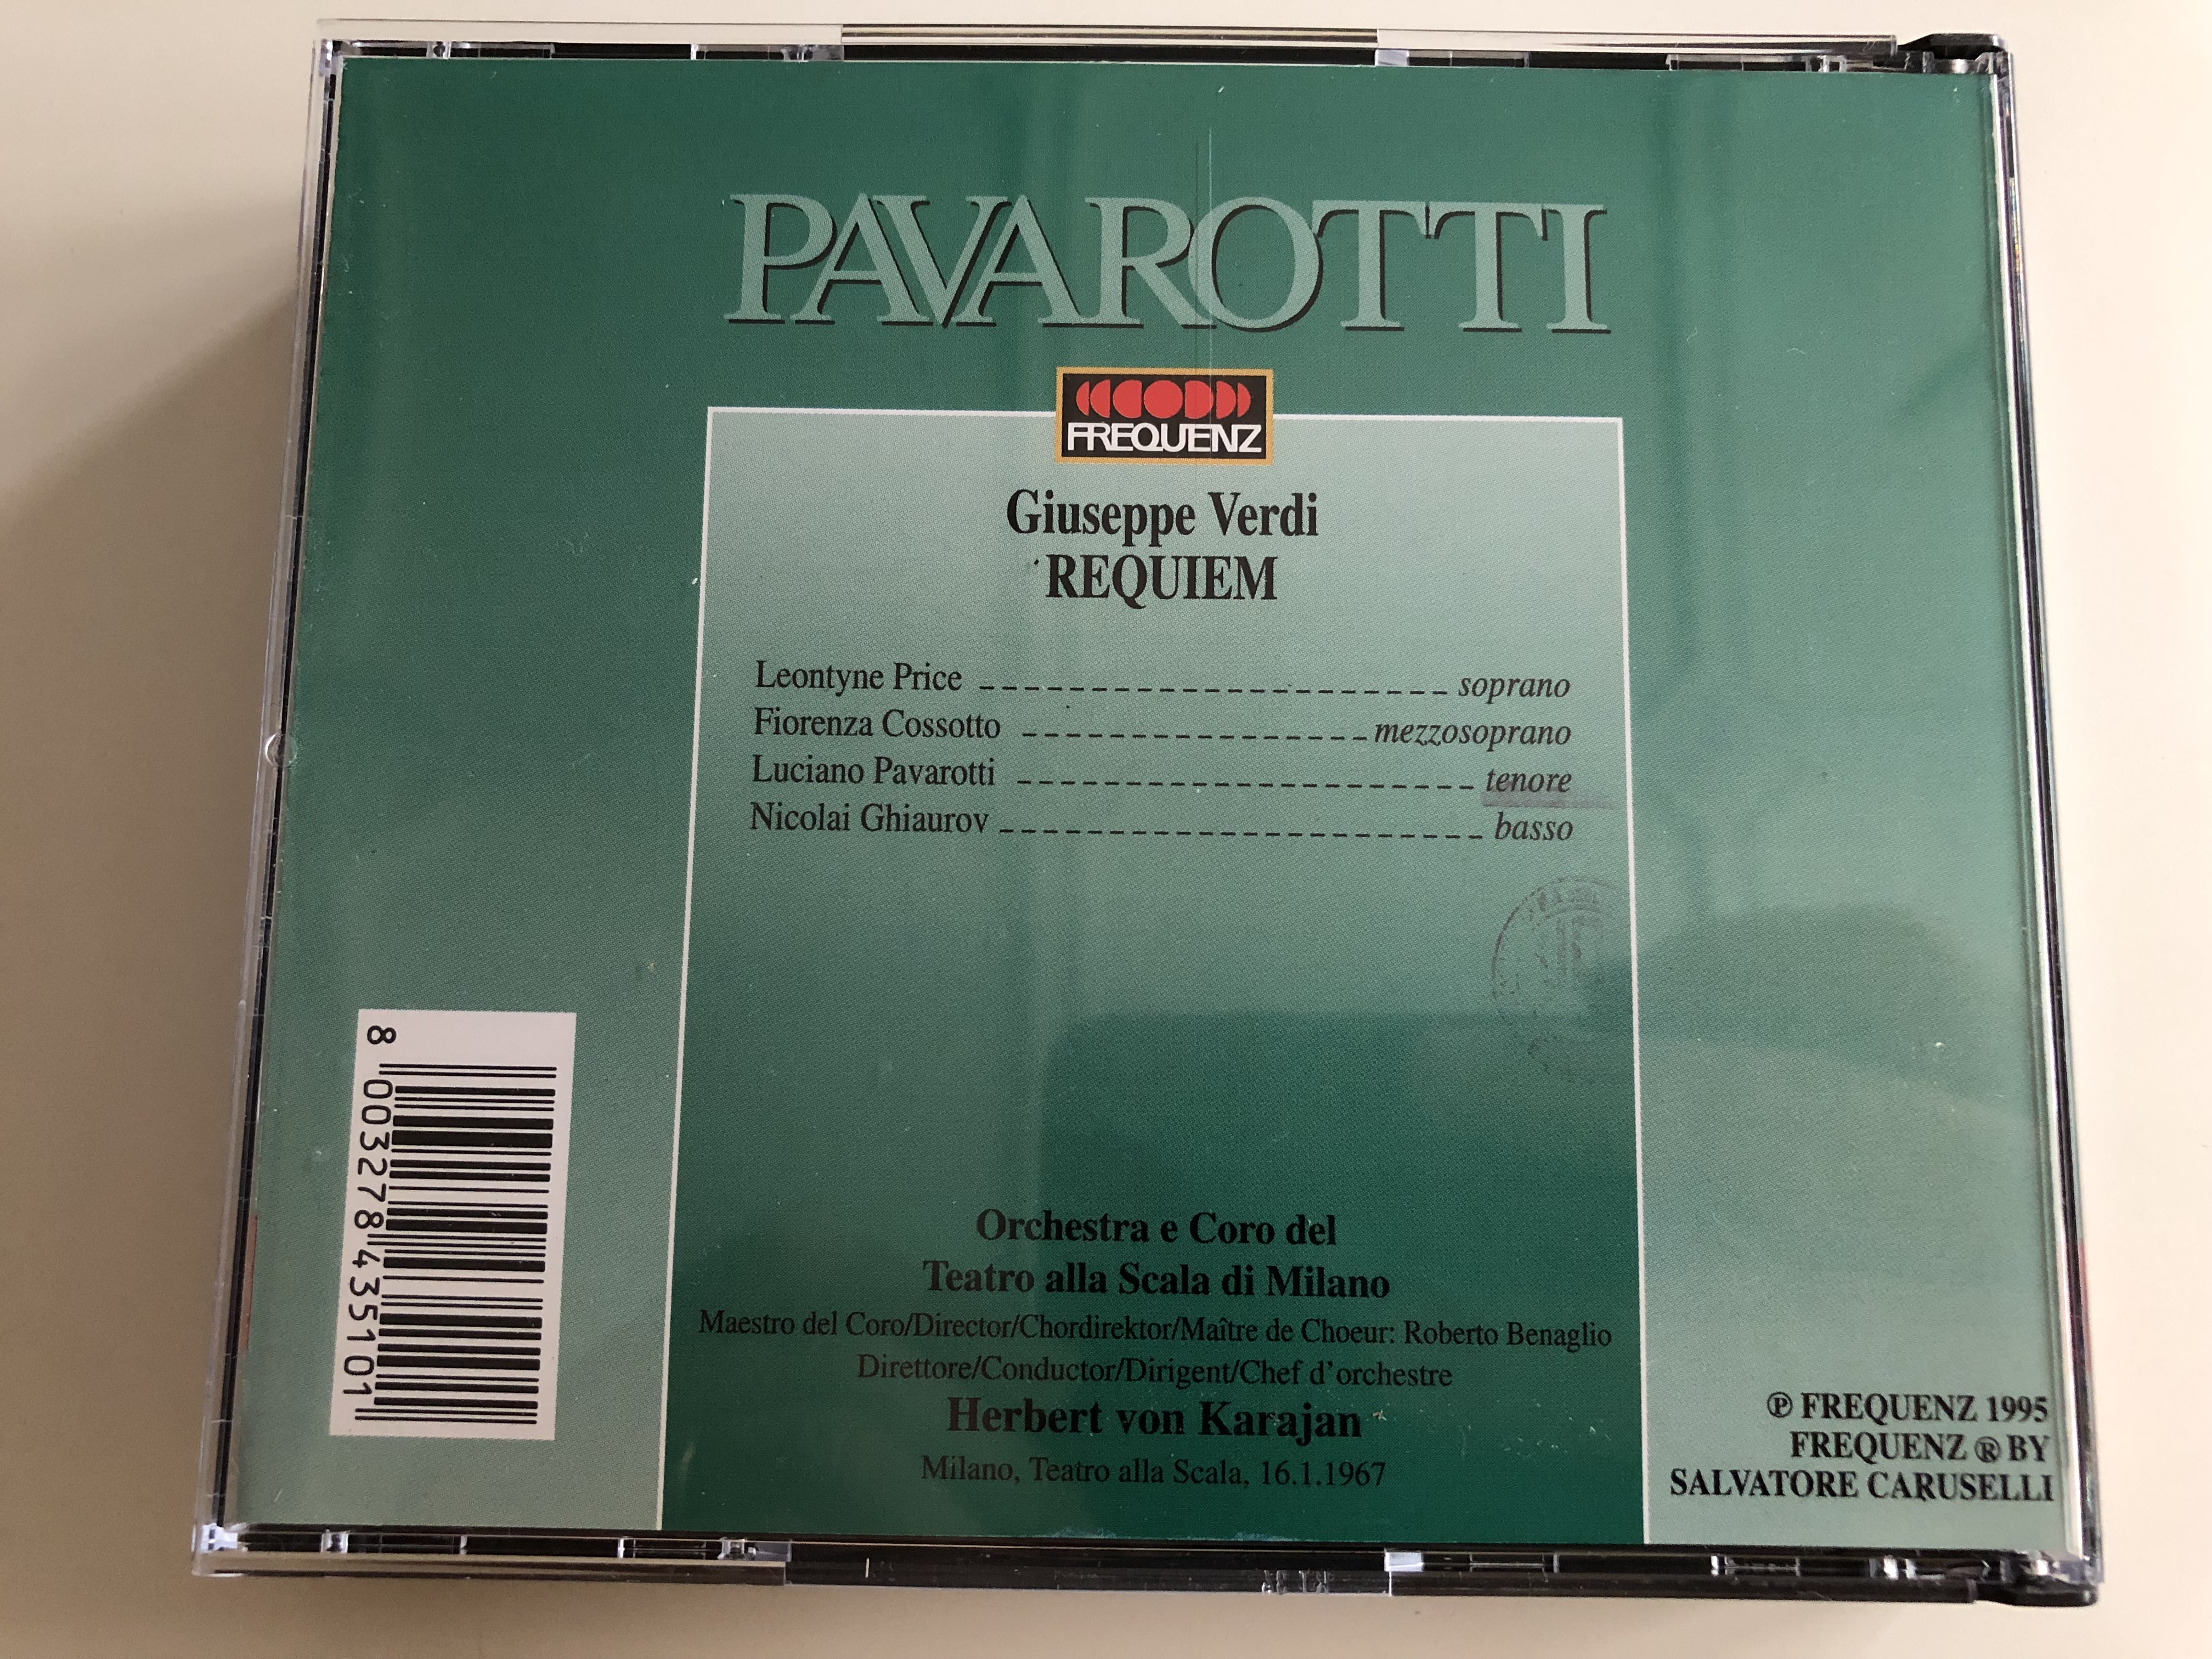 -il-grande-pavarotti-verdi-requiem-leontyne-price-fiorenza-cossotto-luciano-pavarotti-nicolati-ghiaurov-orchestra-e-coro-del-teatro-alla-scala-di-milano-conducted-by-herbert-von-karajan-frequenz-2cd-1995-4-.jpg